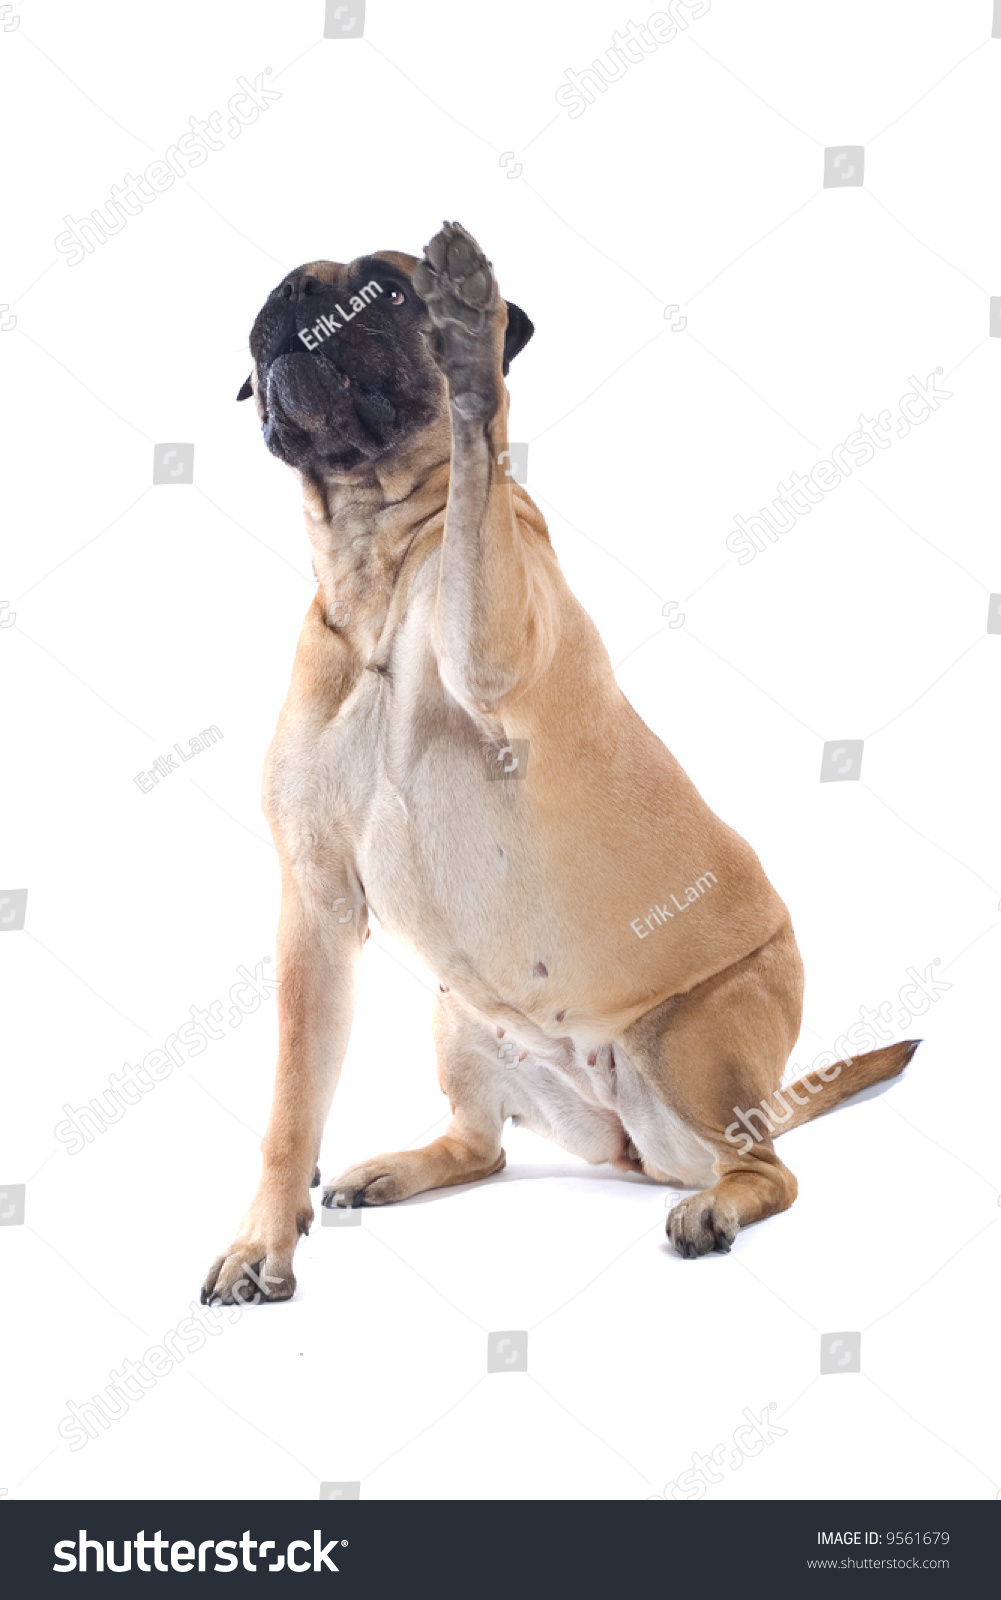 bull mastiff dog isolated on a white background #9561679